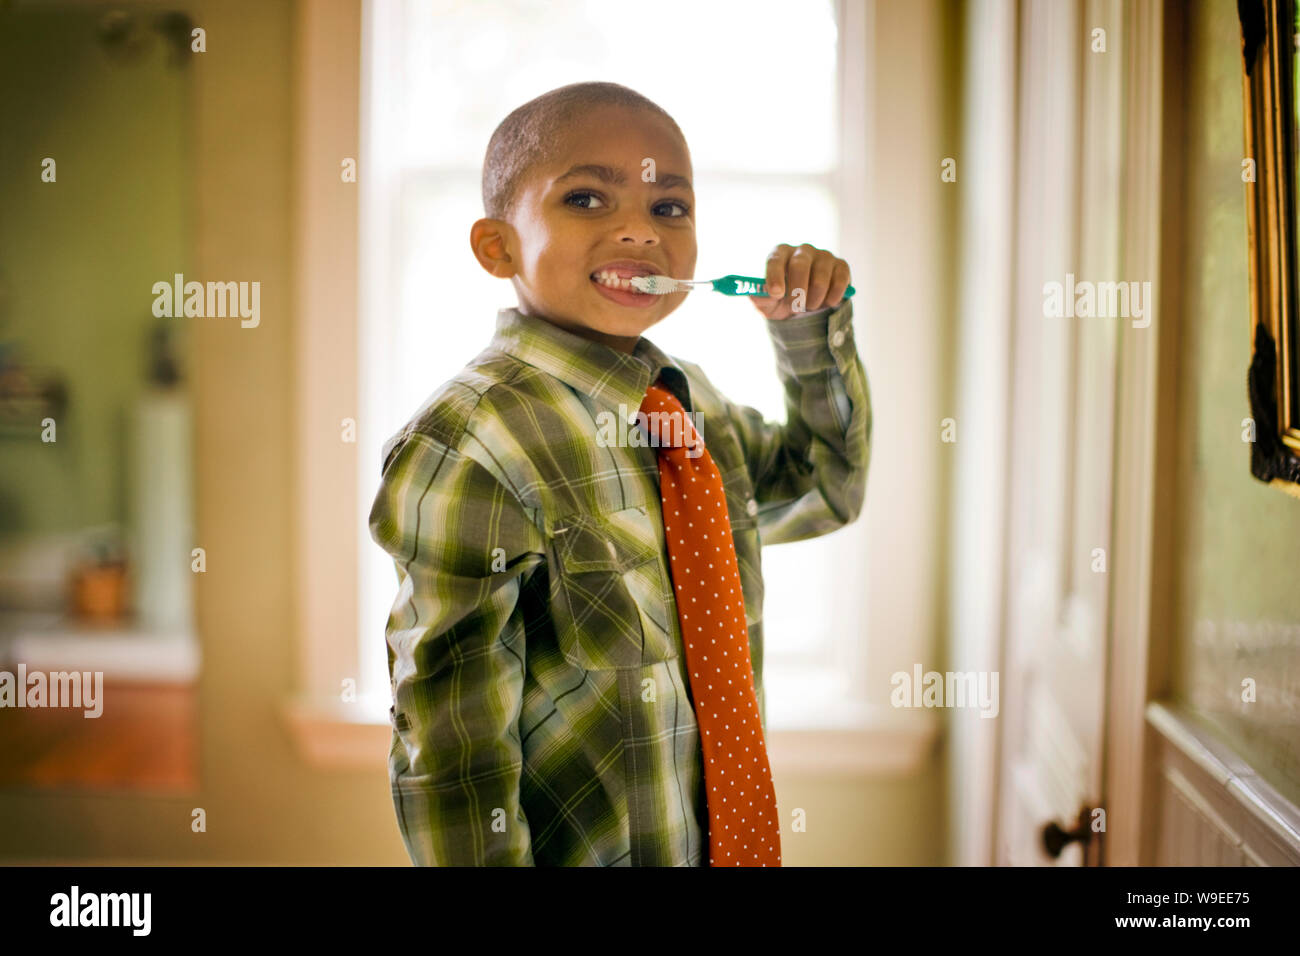 Junge in eine Krawatte Bürsten seine Zähne, wie er für ein Portrait Posen. Stockfoto